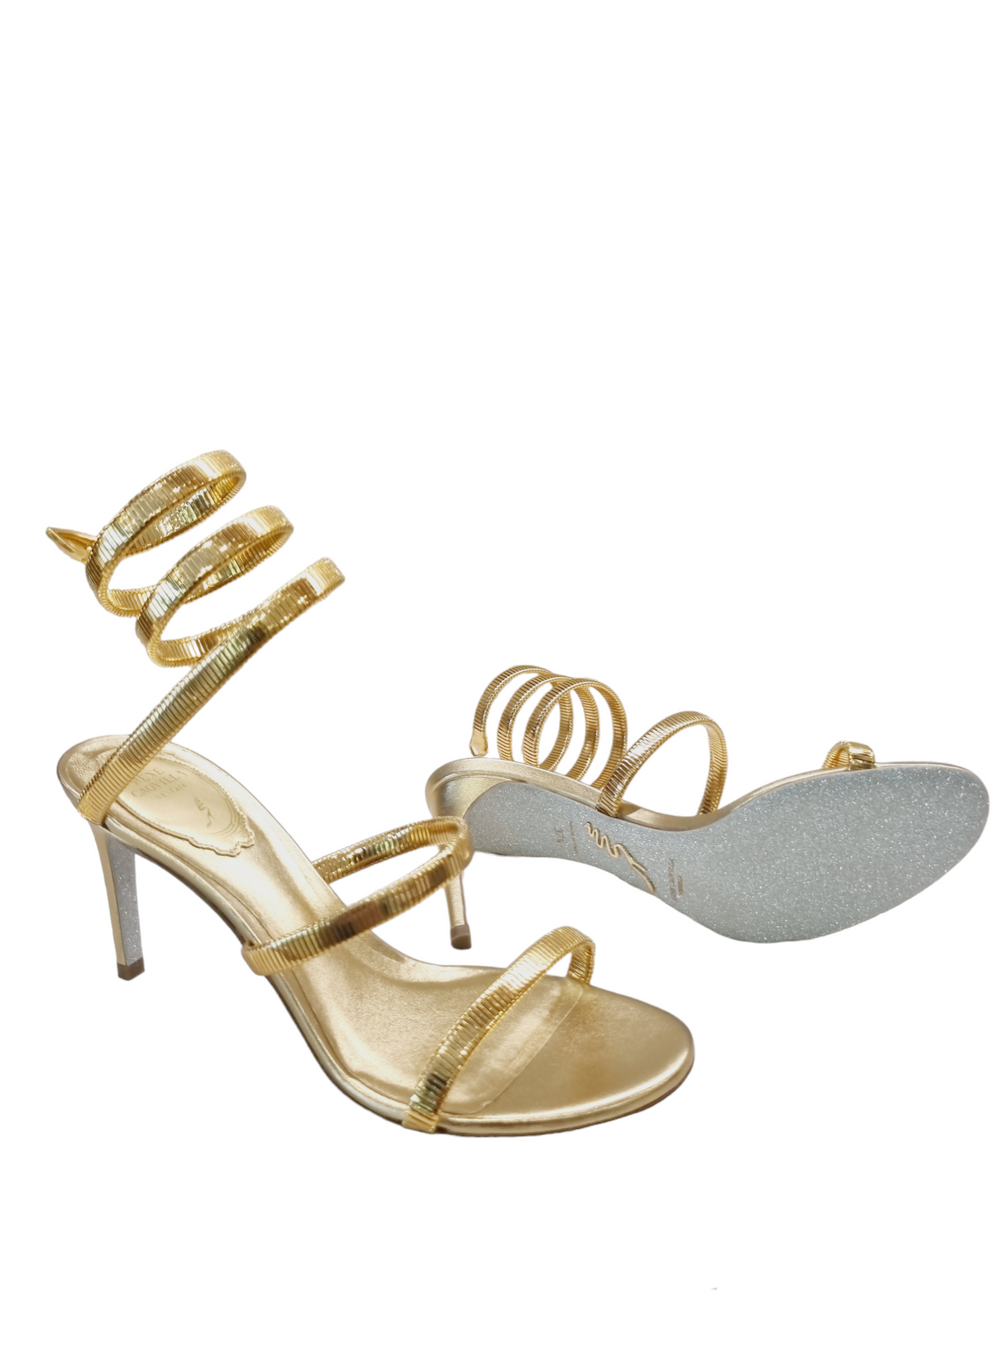 Juniper Gold Metal Sandals - Rene Caovilla - Liberty Shoes Australia